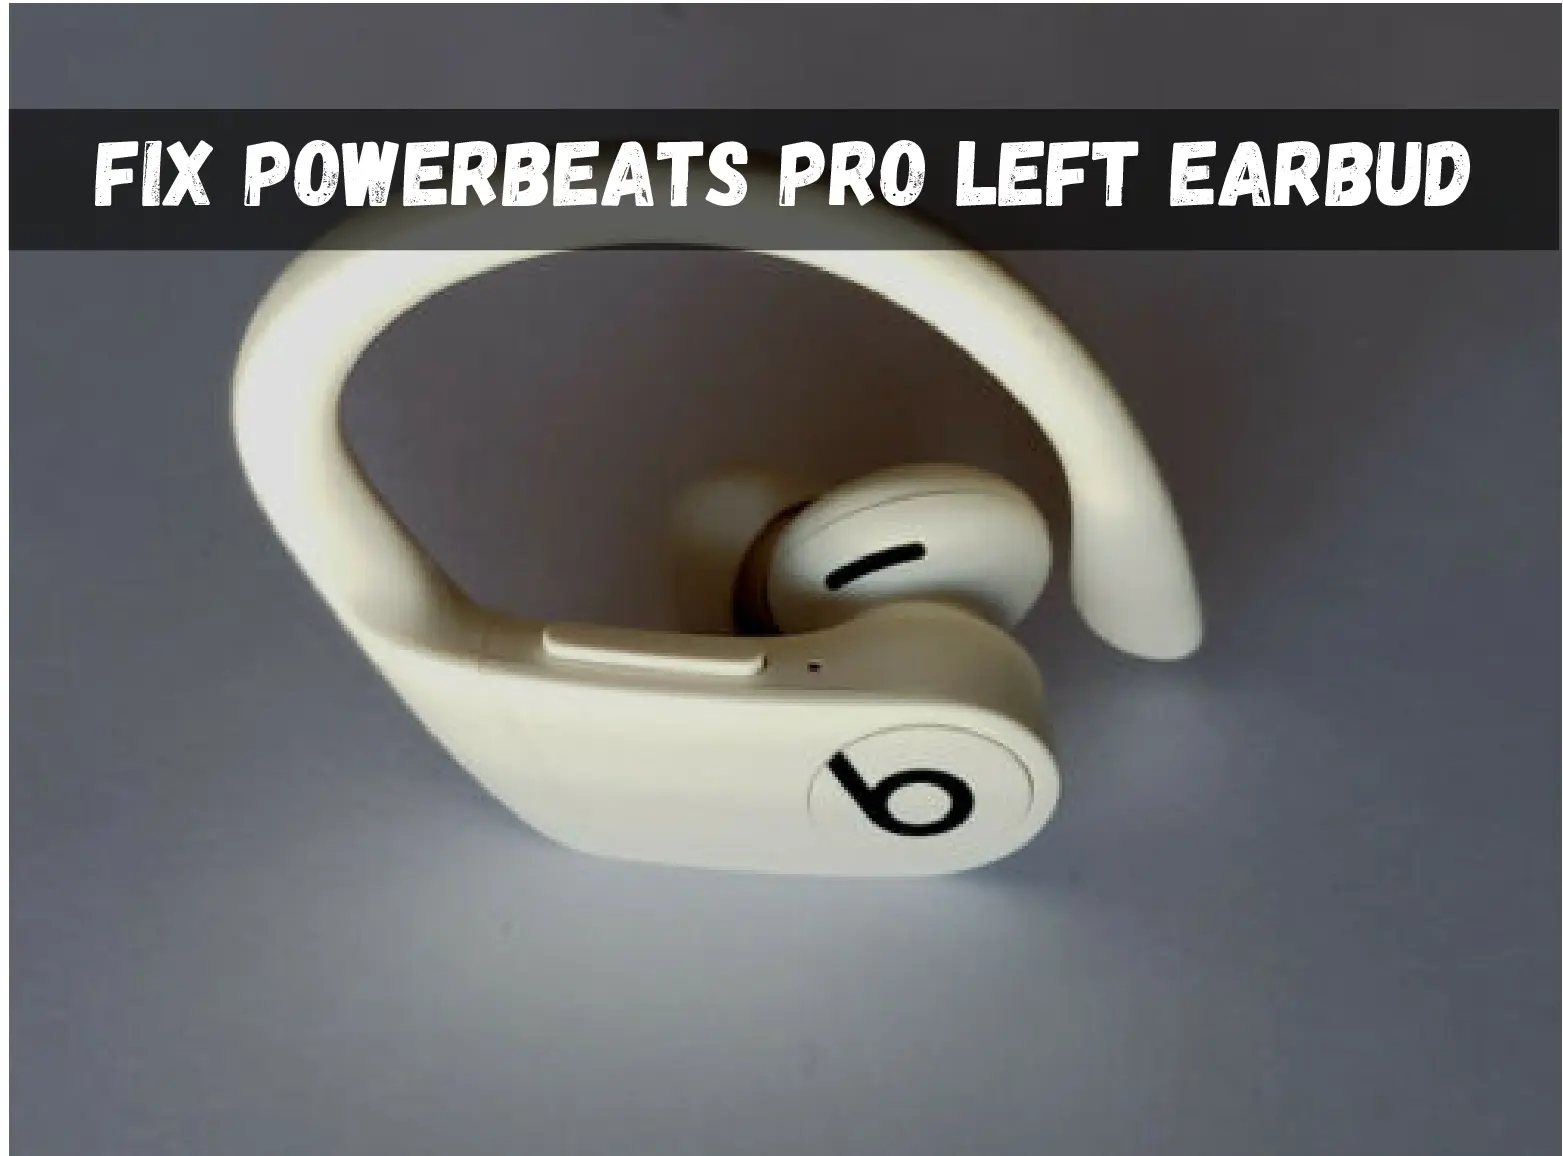 Powerbeats Pro Left Earbud Not Working